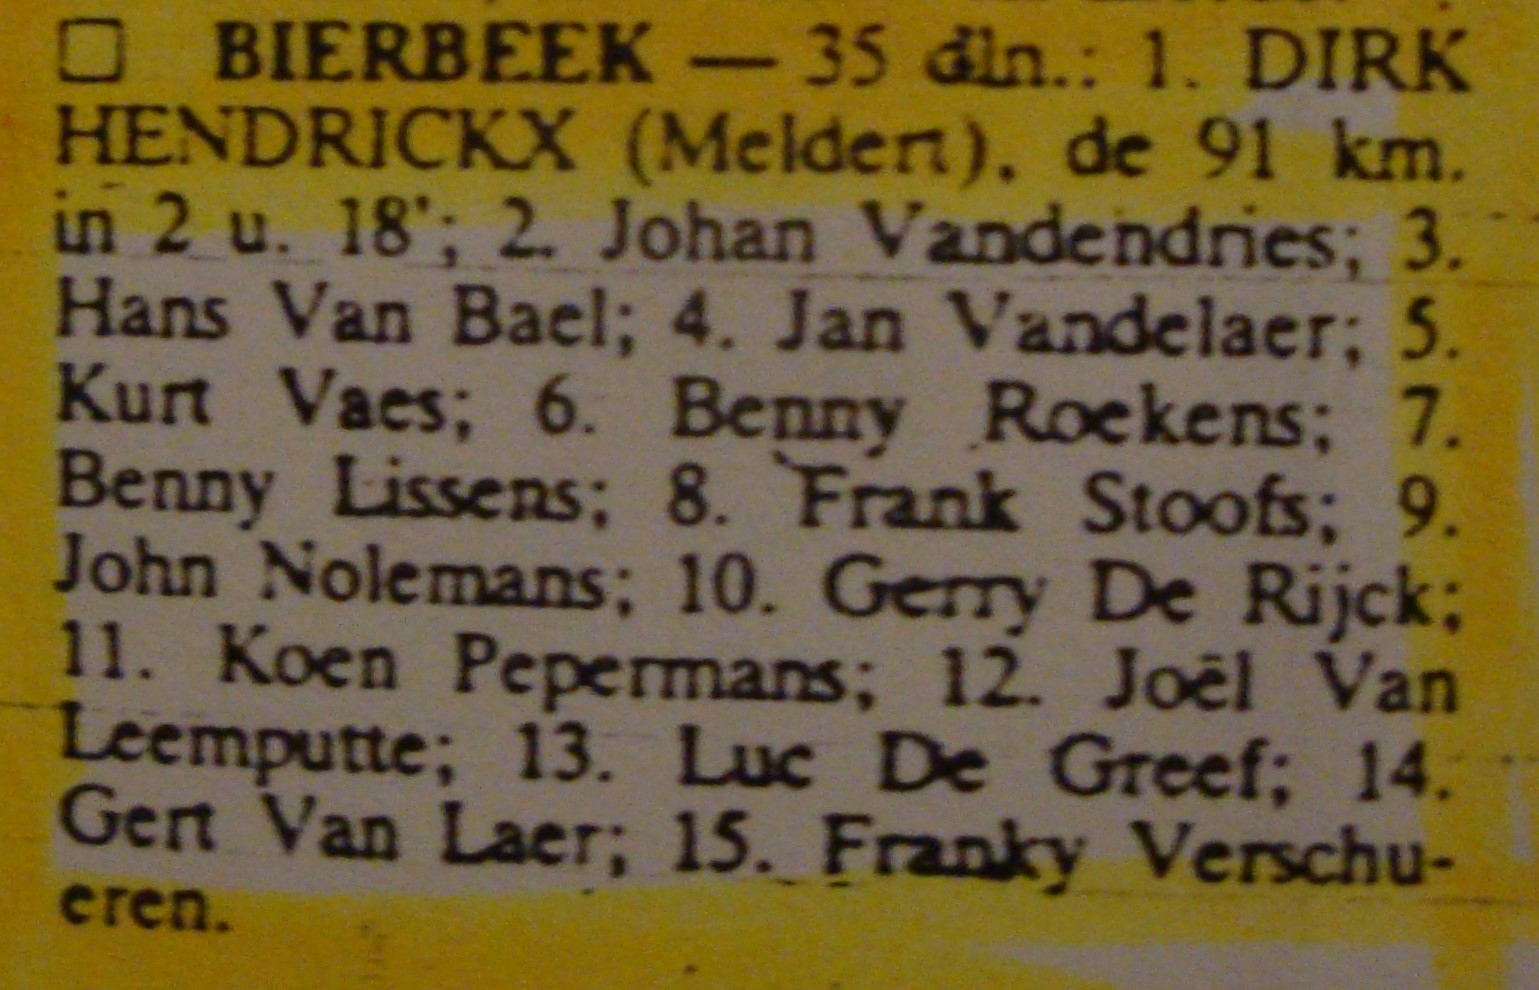 19850606-Dirk-hendrickx-pers.JPG - 317,11 kB